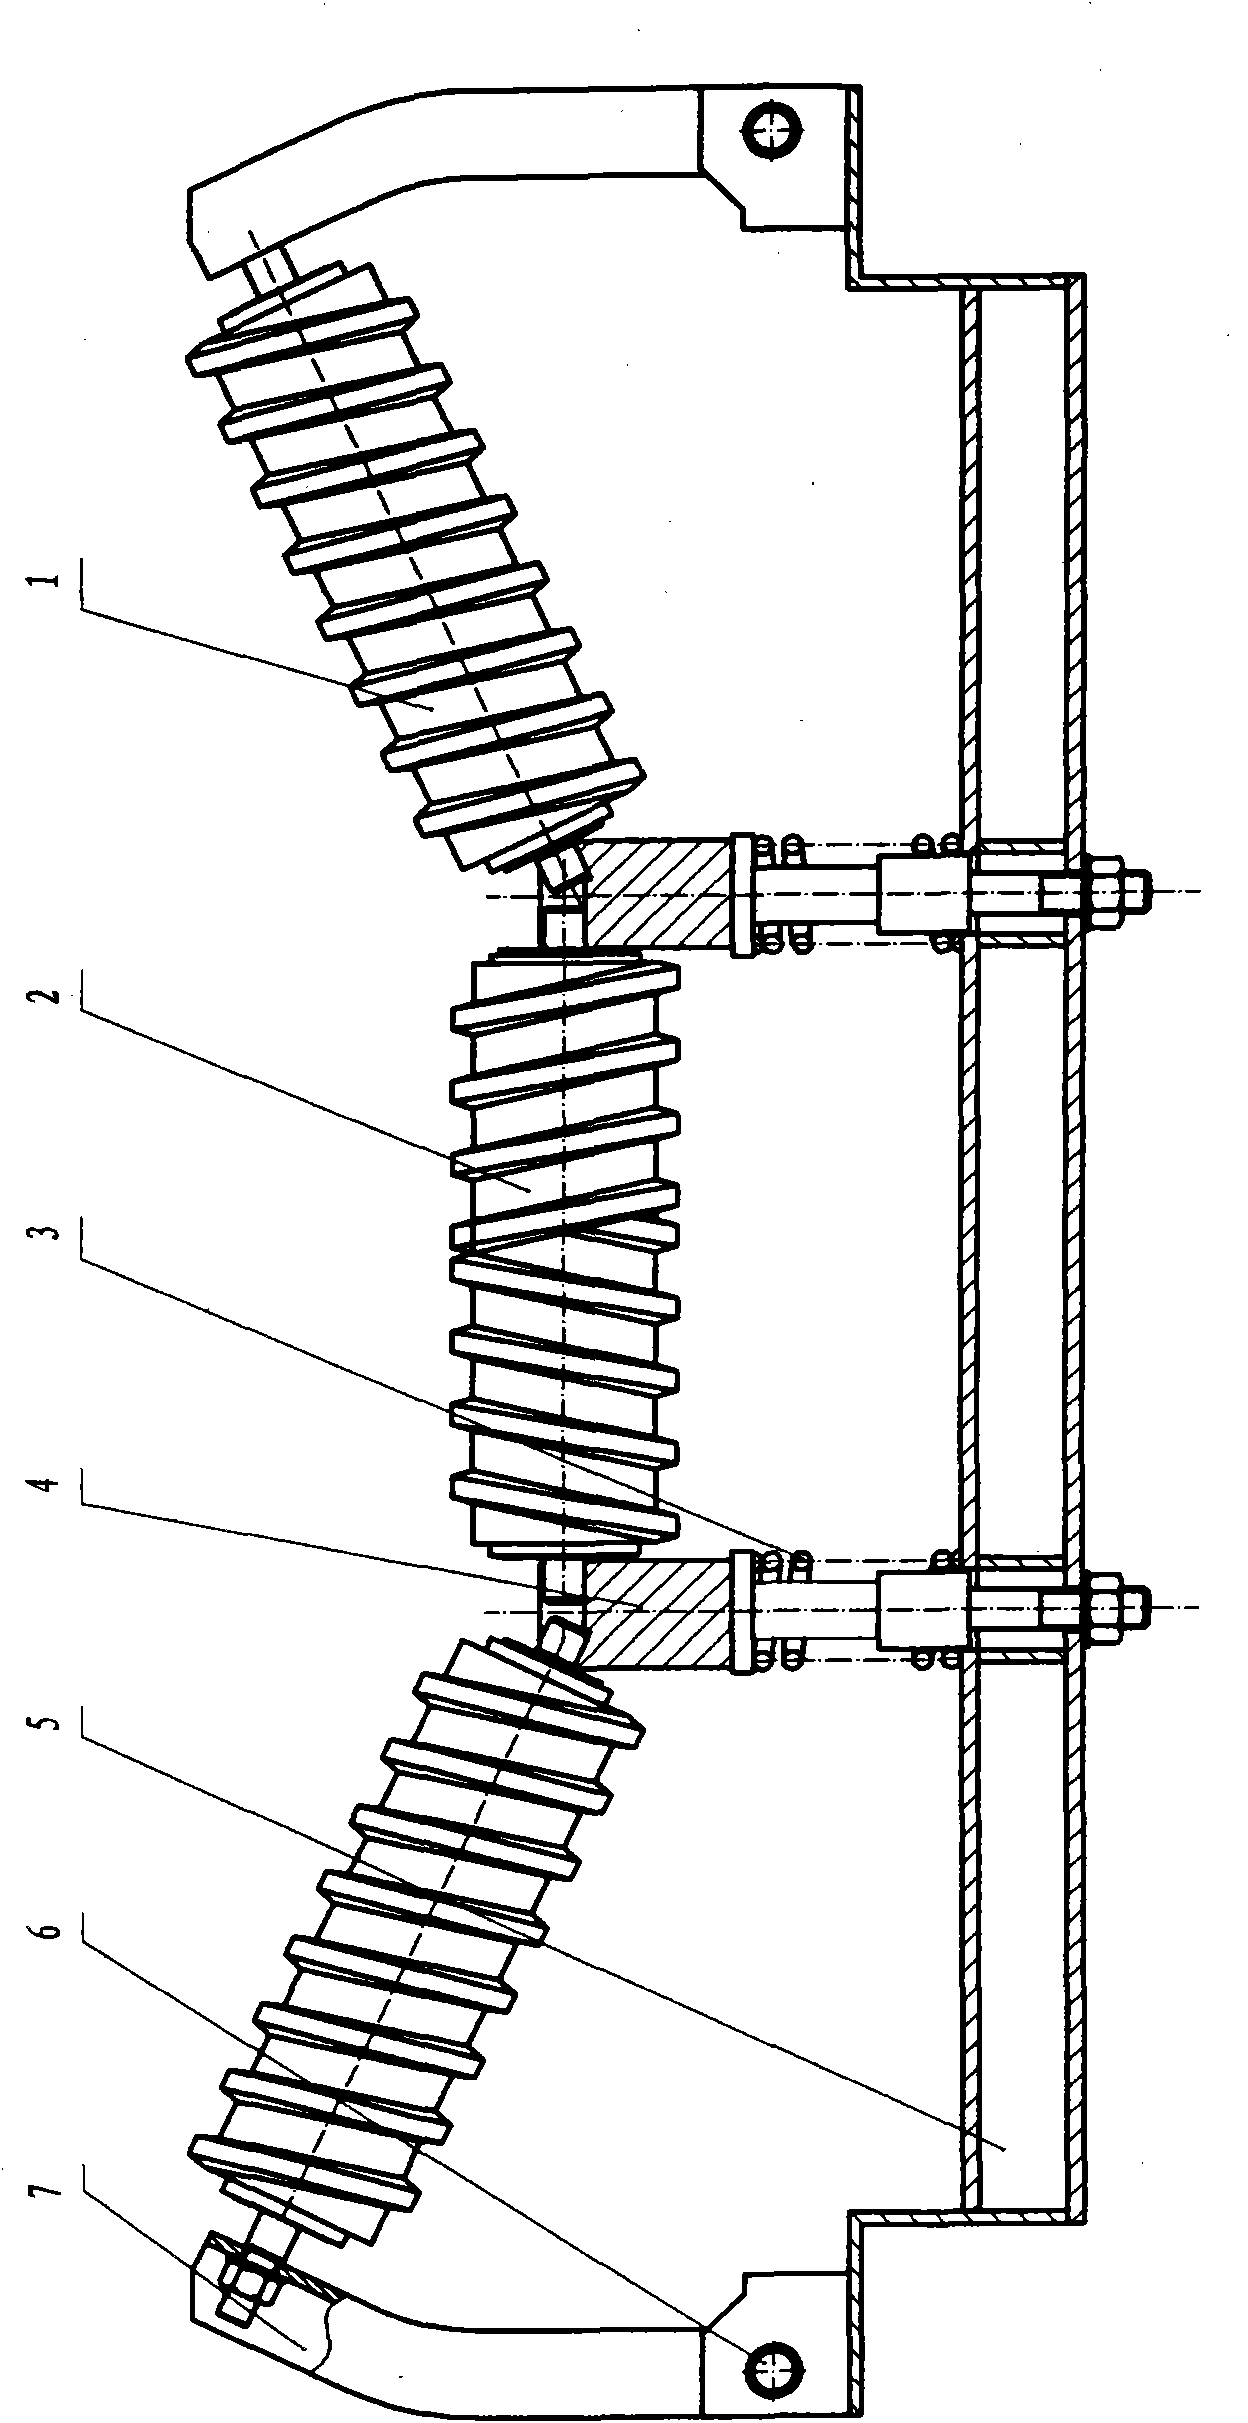 Belt conveyer rectification buffer